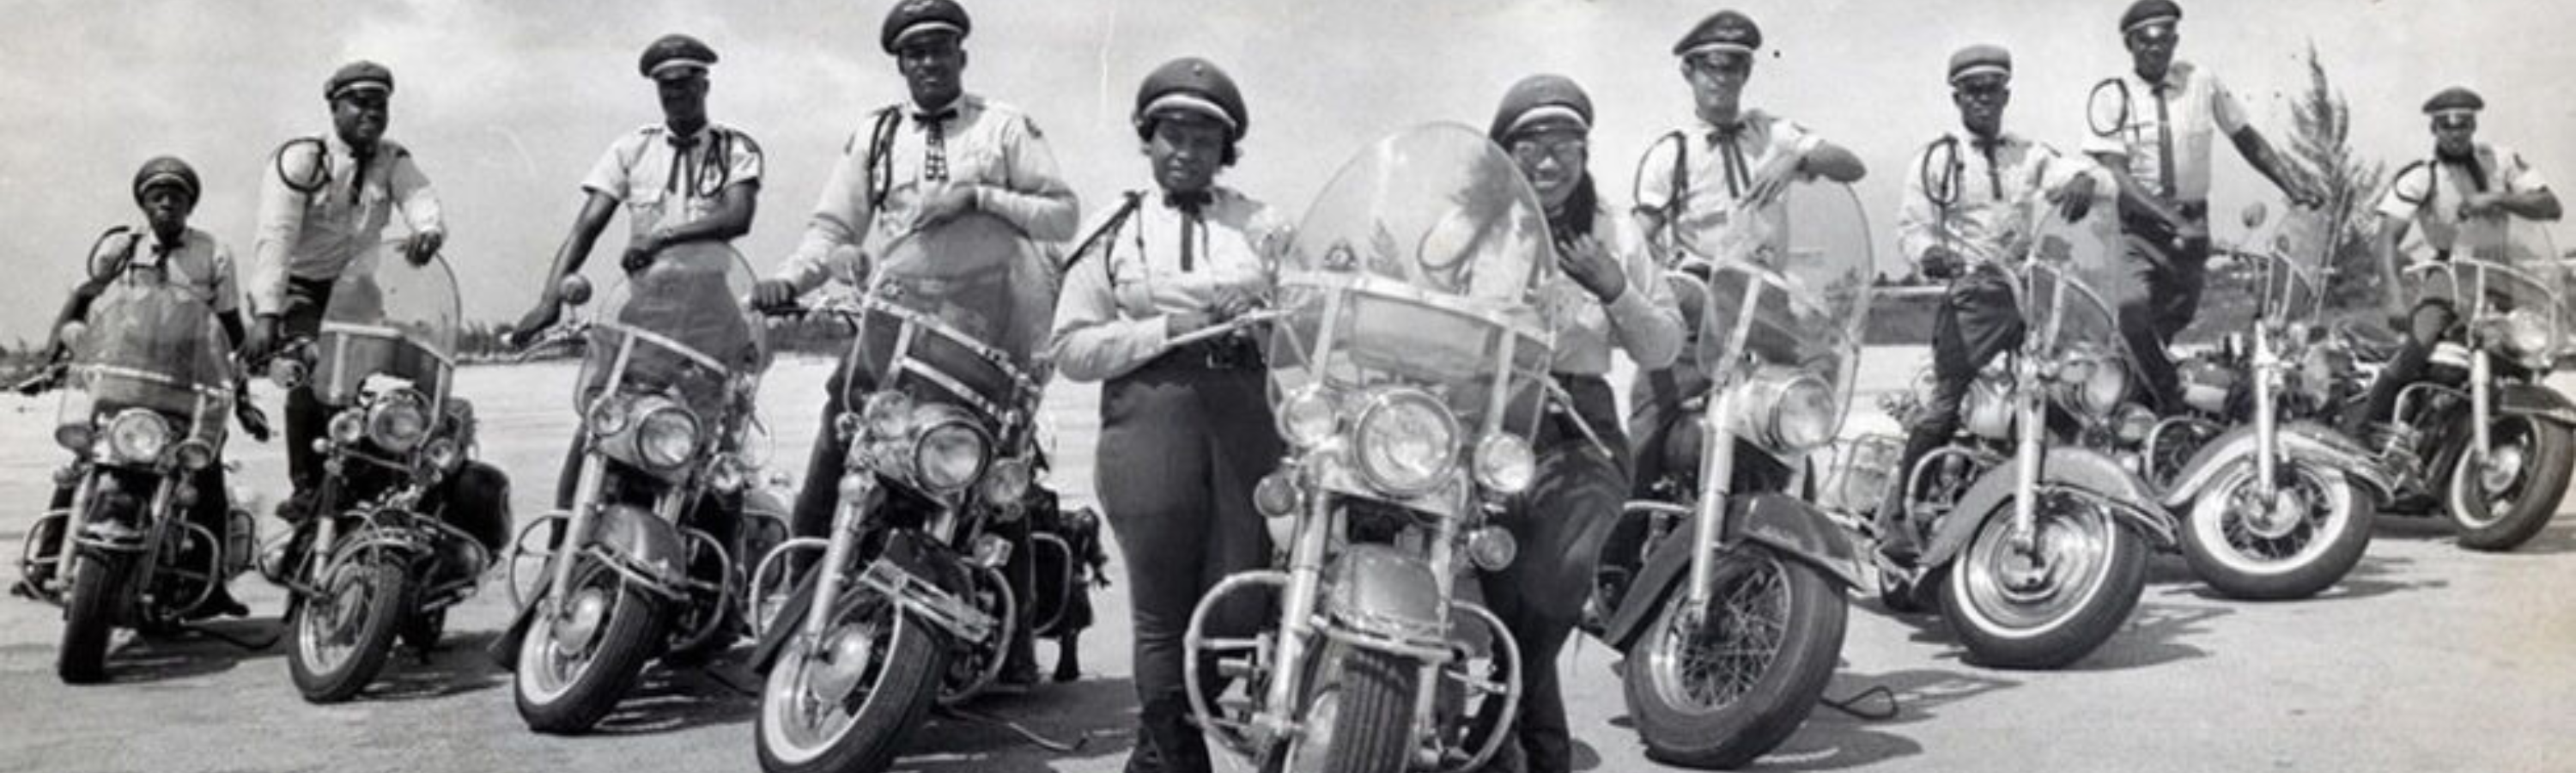 Partie 1 - Découvrez Cuba avec Ernesto Guevara sur la Harley-Davidson 